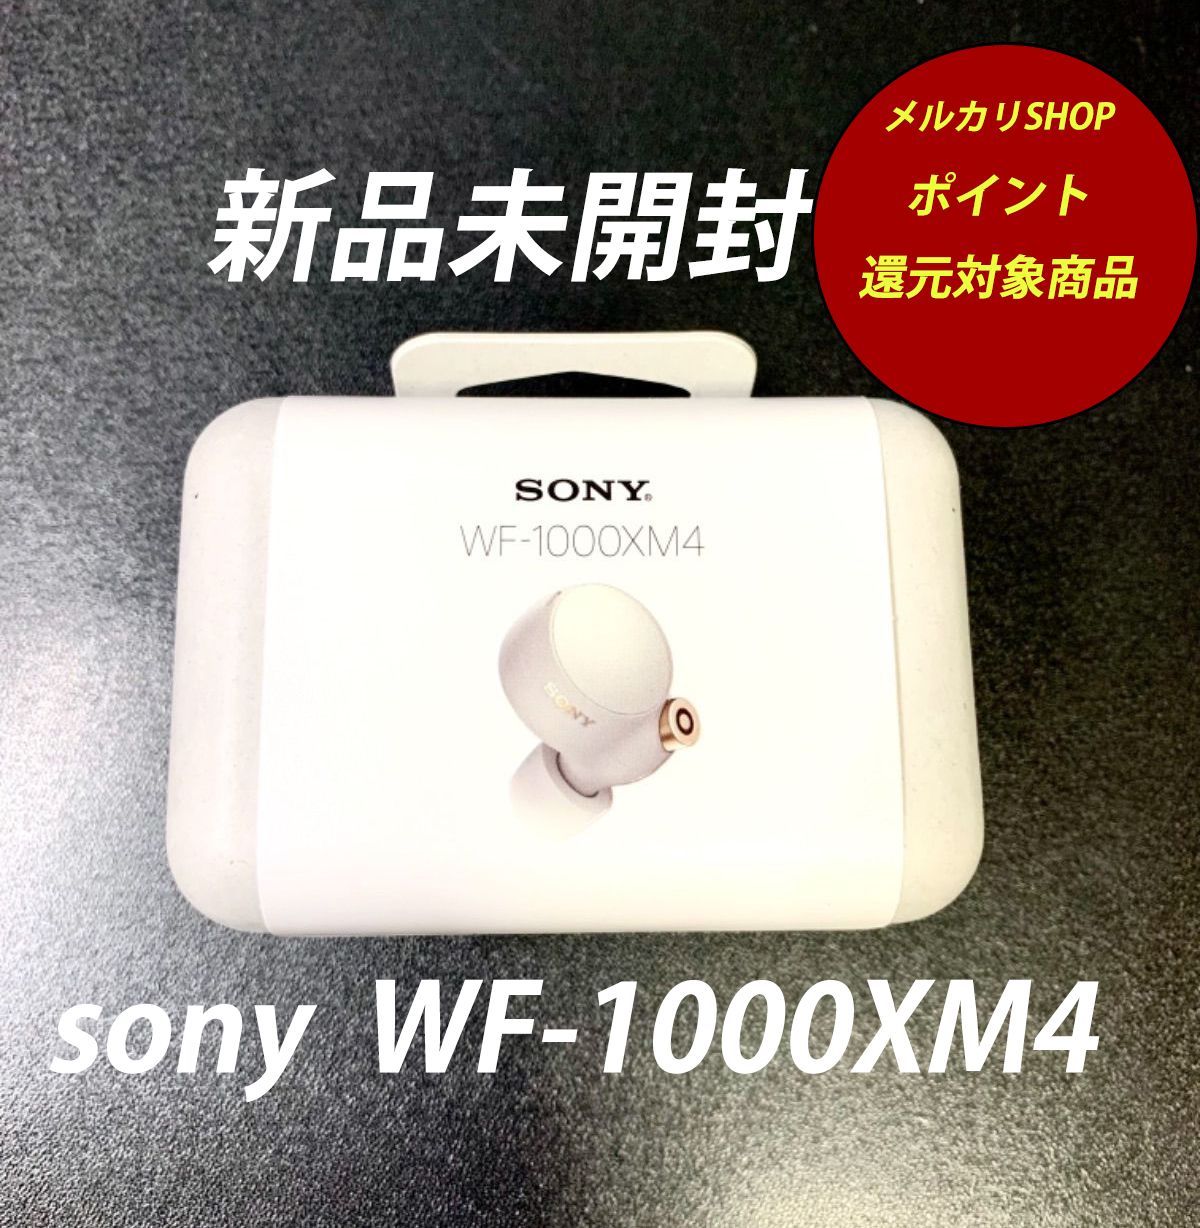 ポイント還元対象】SONY WF-1000XM4 プラチナシルバー【新品】 - XION ...